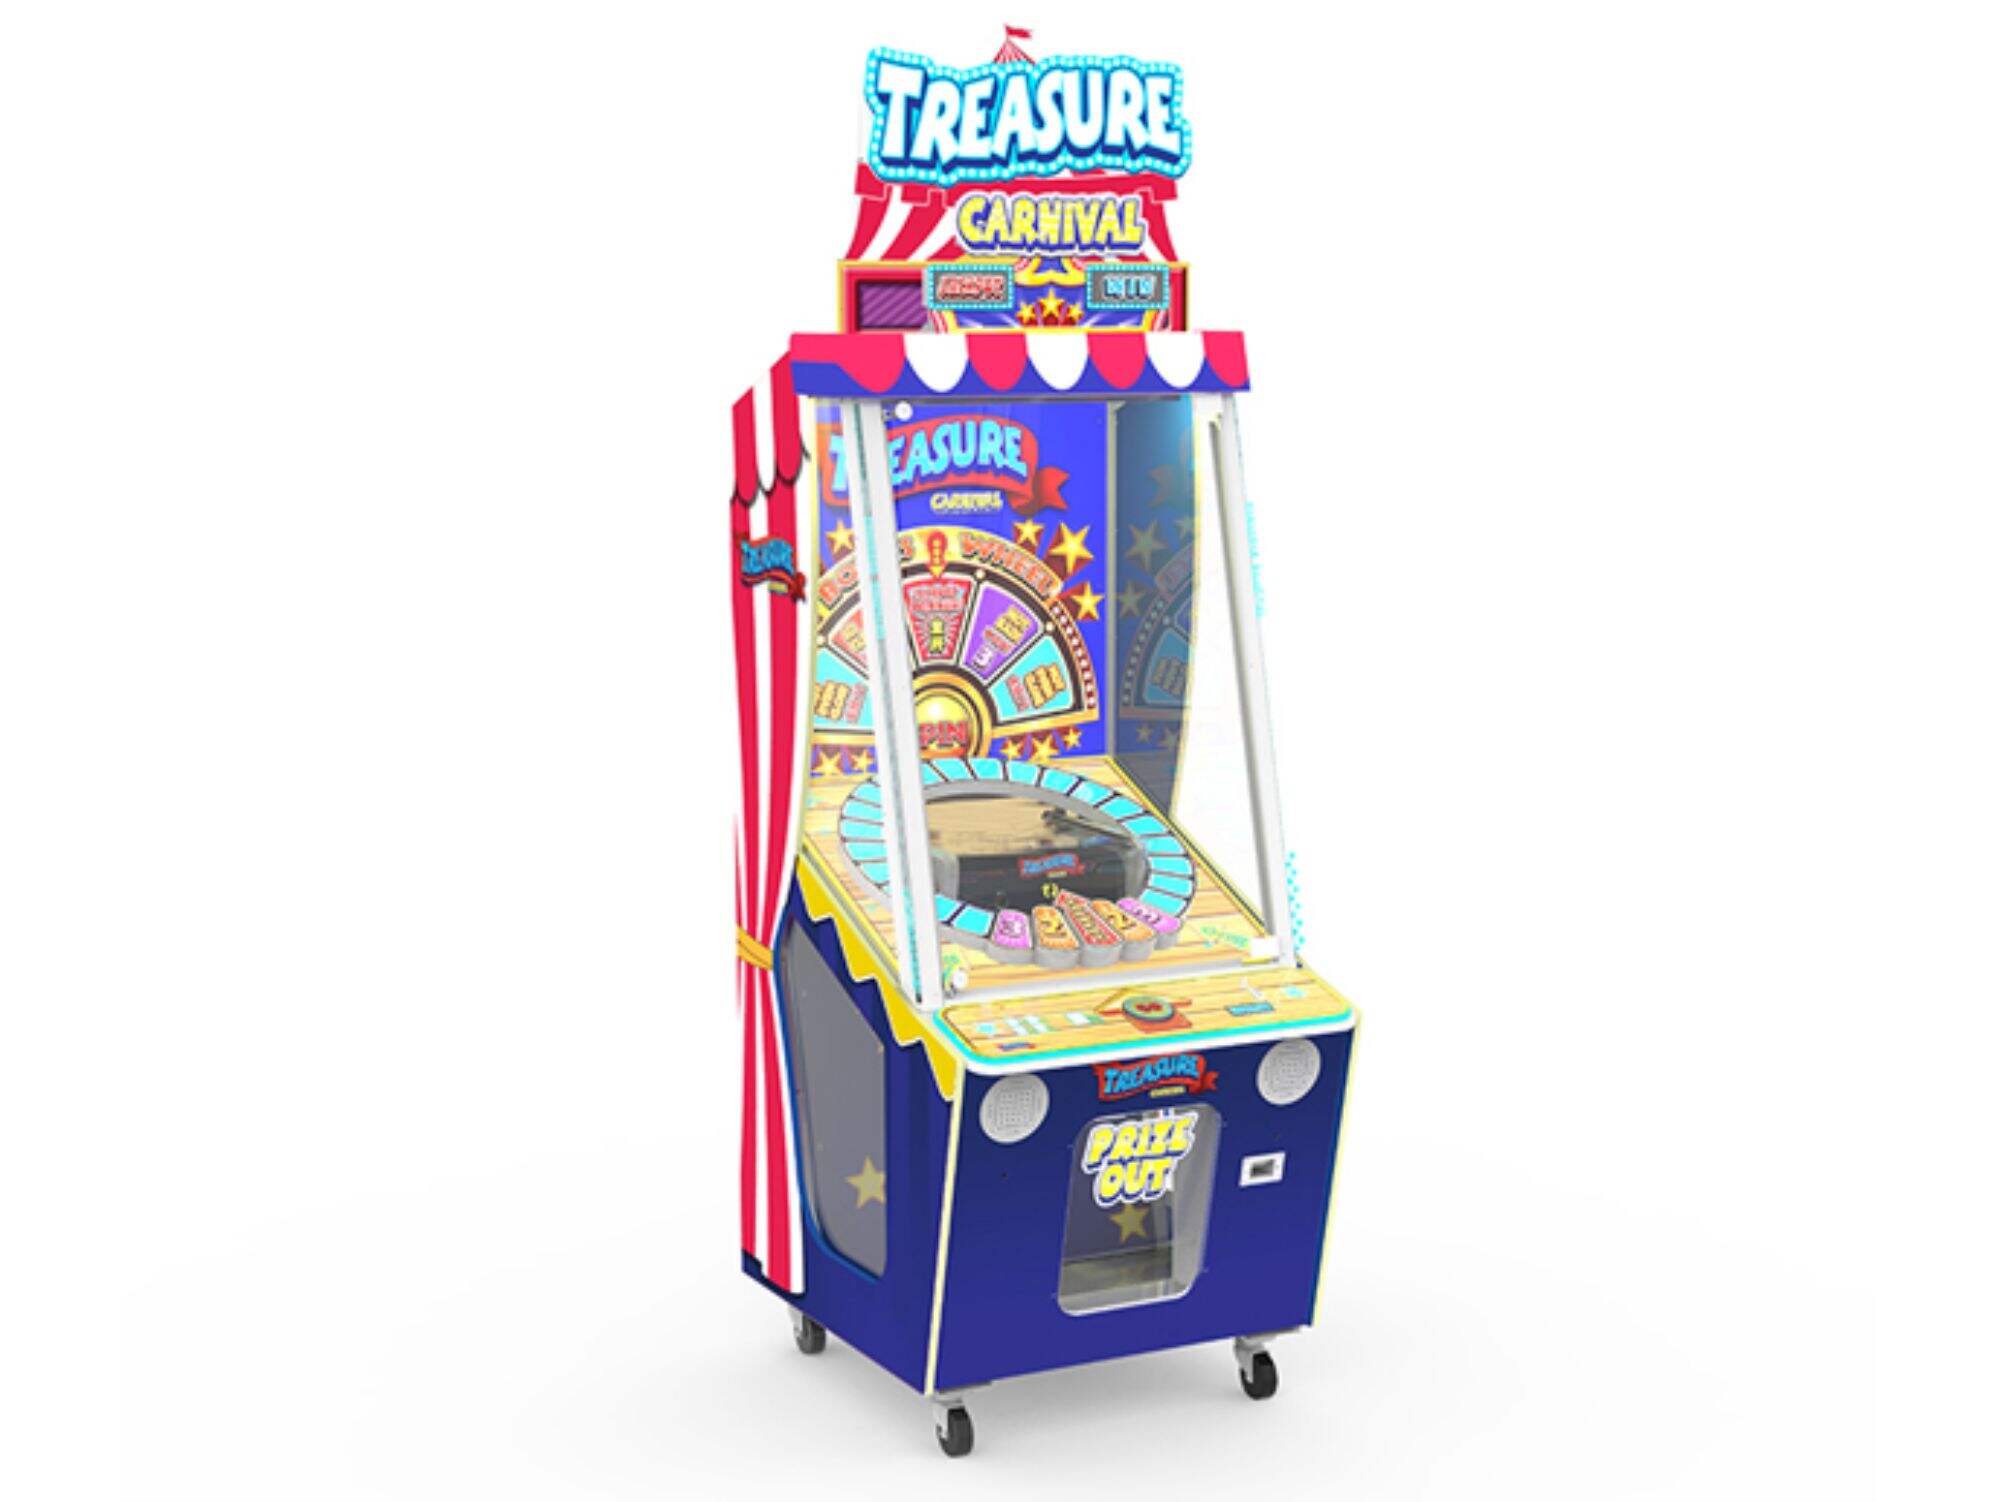 Treasure Carnival Prize Redemption Game Machine